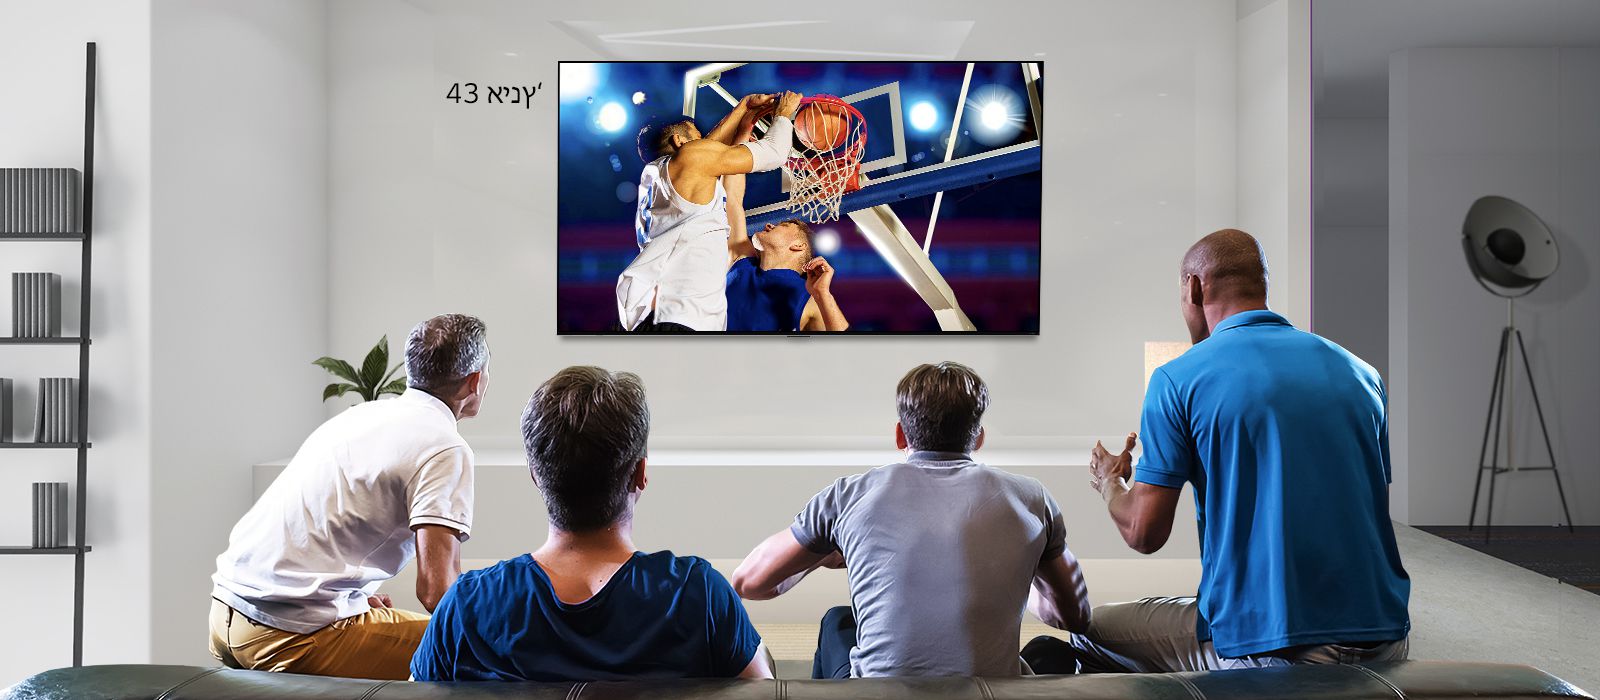 מבט אחורי של טלוויזיה תלויה על קיר המציגה משחק כדורסל שבו צופים ארבעה גברים. גלילה לשמאל מציגה את ההבדל בגודל בין מסך 43 אינץ‘ למסך 86 אינץ‘.